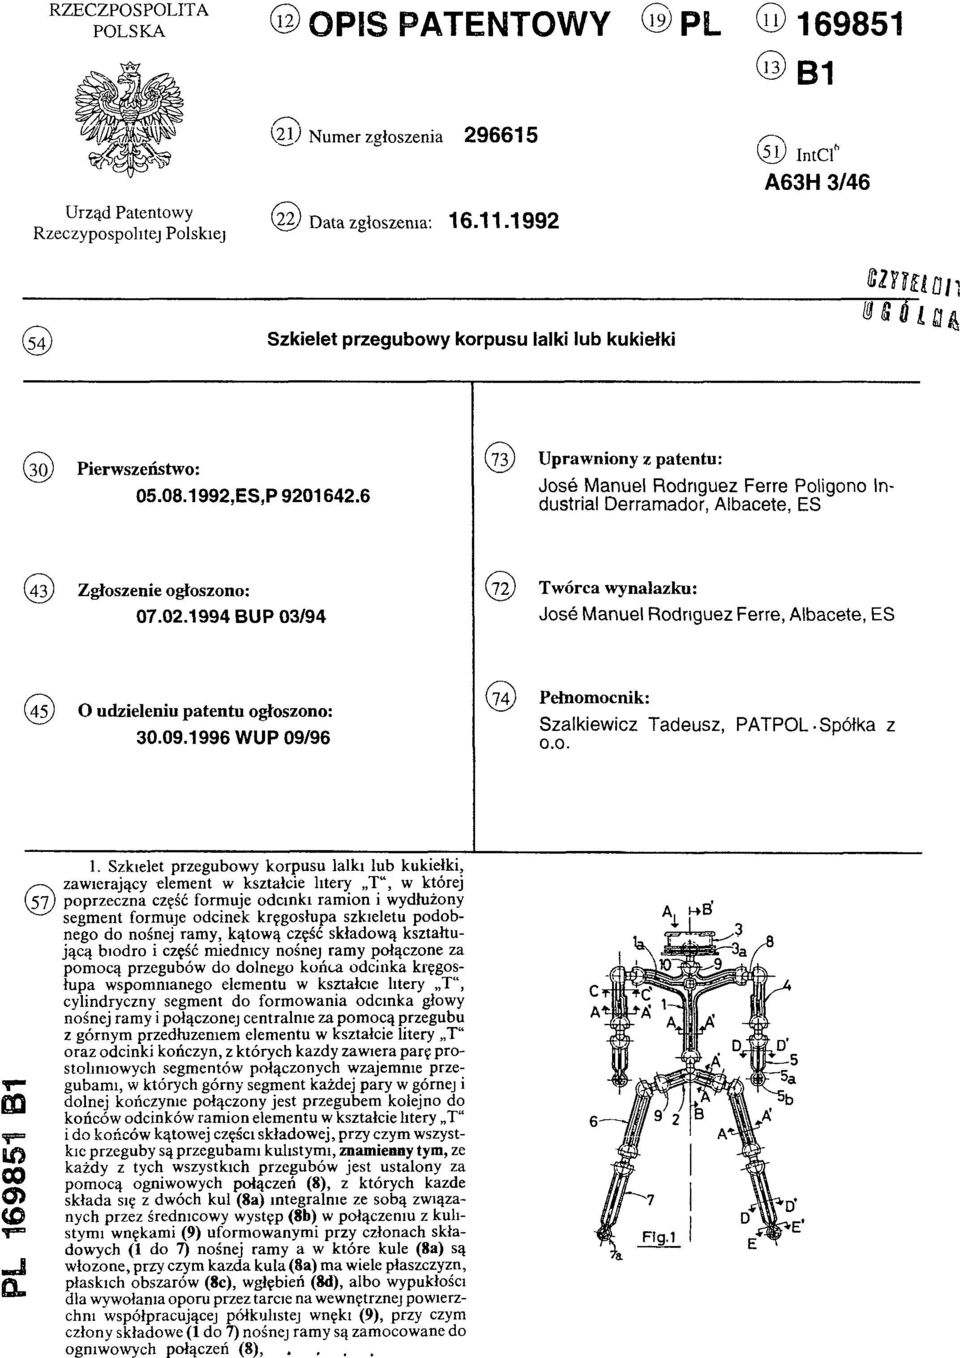 1994 BUP 03/94 Jose Manuel Rodriguez Ferre, Albacete, ES (74) Pełnomocnik: (45) O udzieleniu patentu ogłoszono: Szalkiewicz Tadeusz, PATPOL-Spółka z 30.09.1996 WUP 09/96 0.0. PL 169851 B1 1.